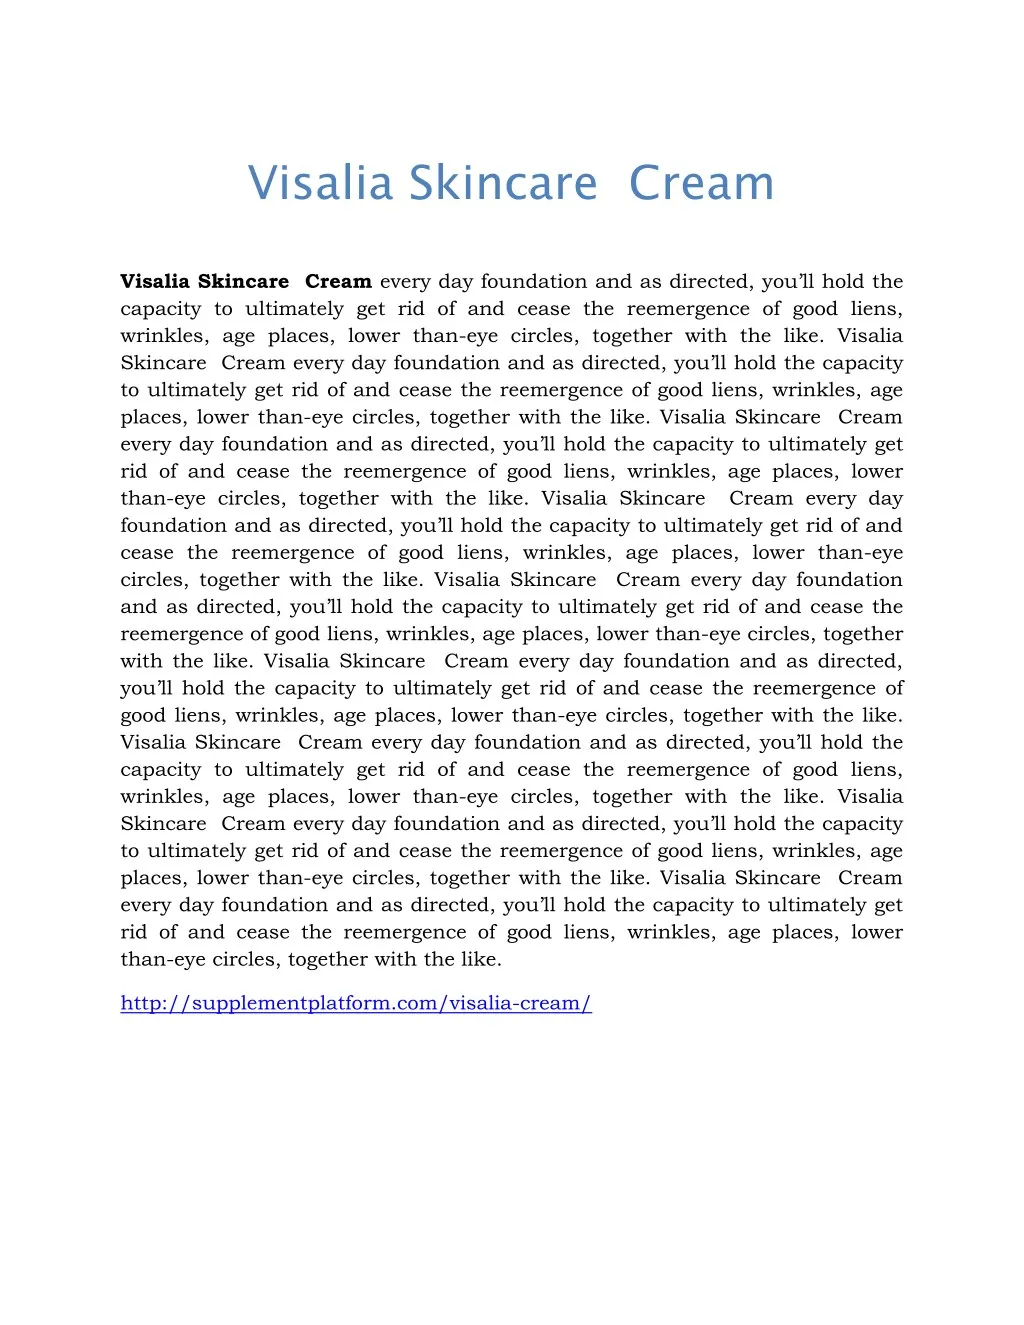 visalia skincare cream